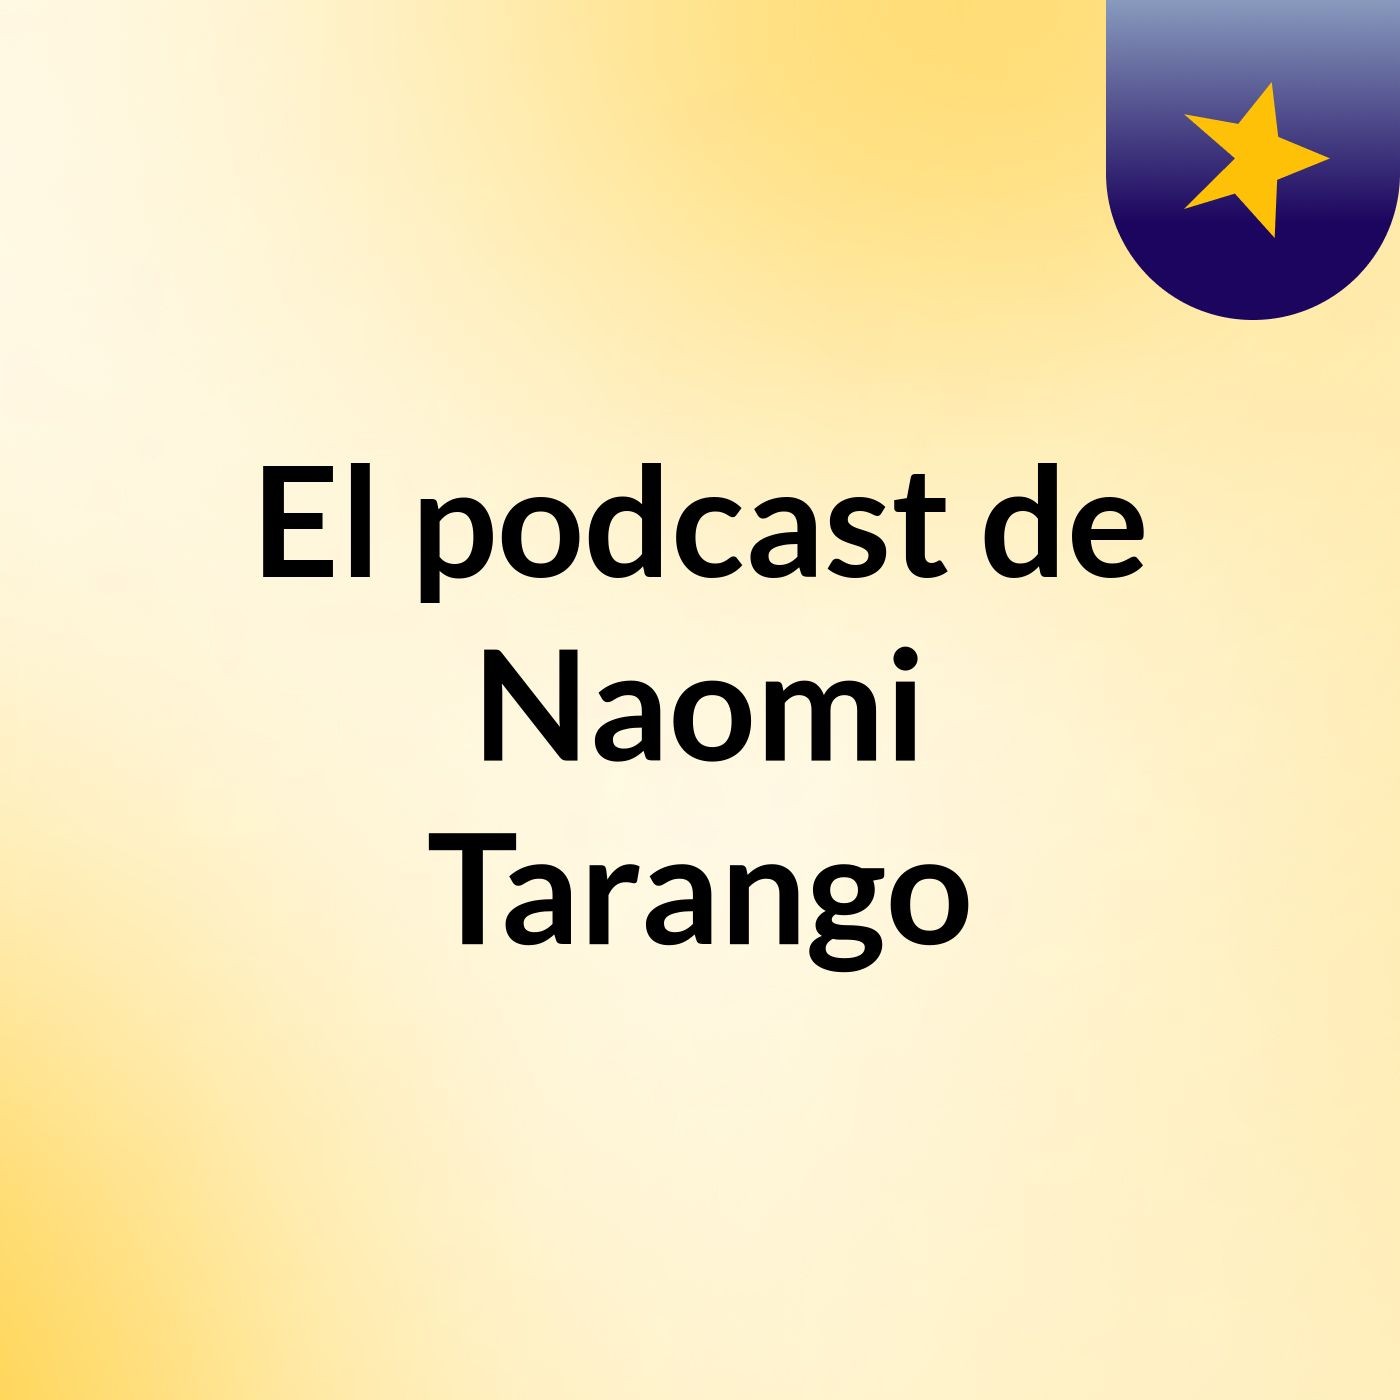 El podcast de Naomi Tarango